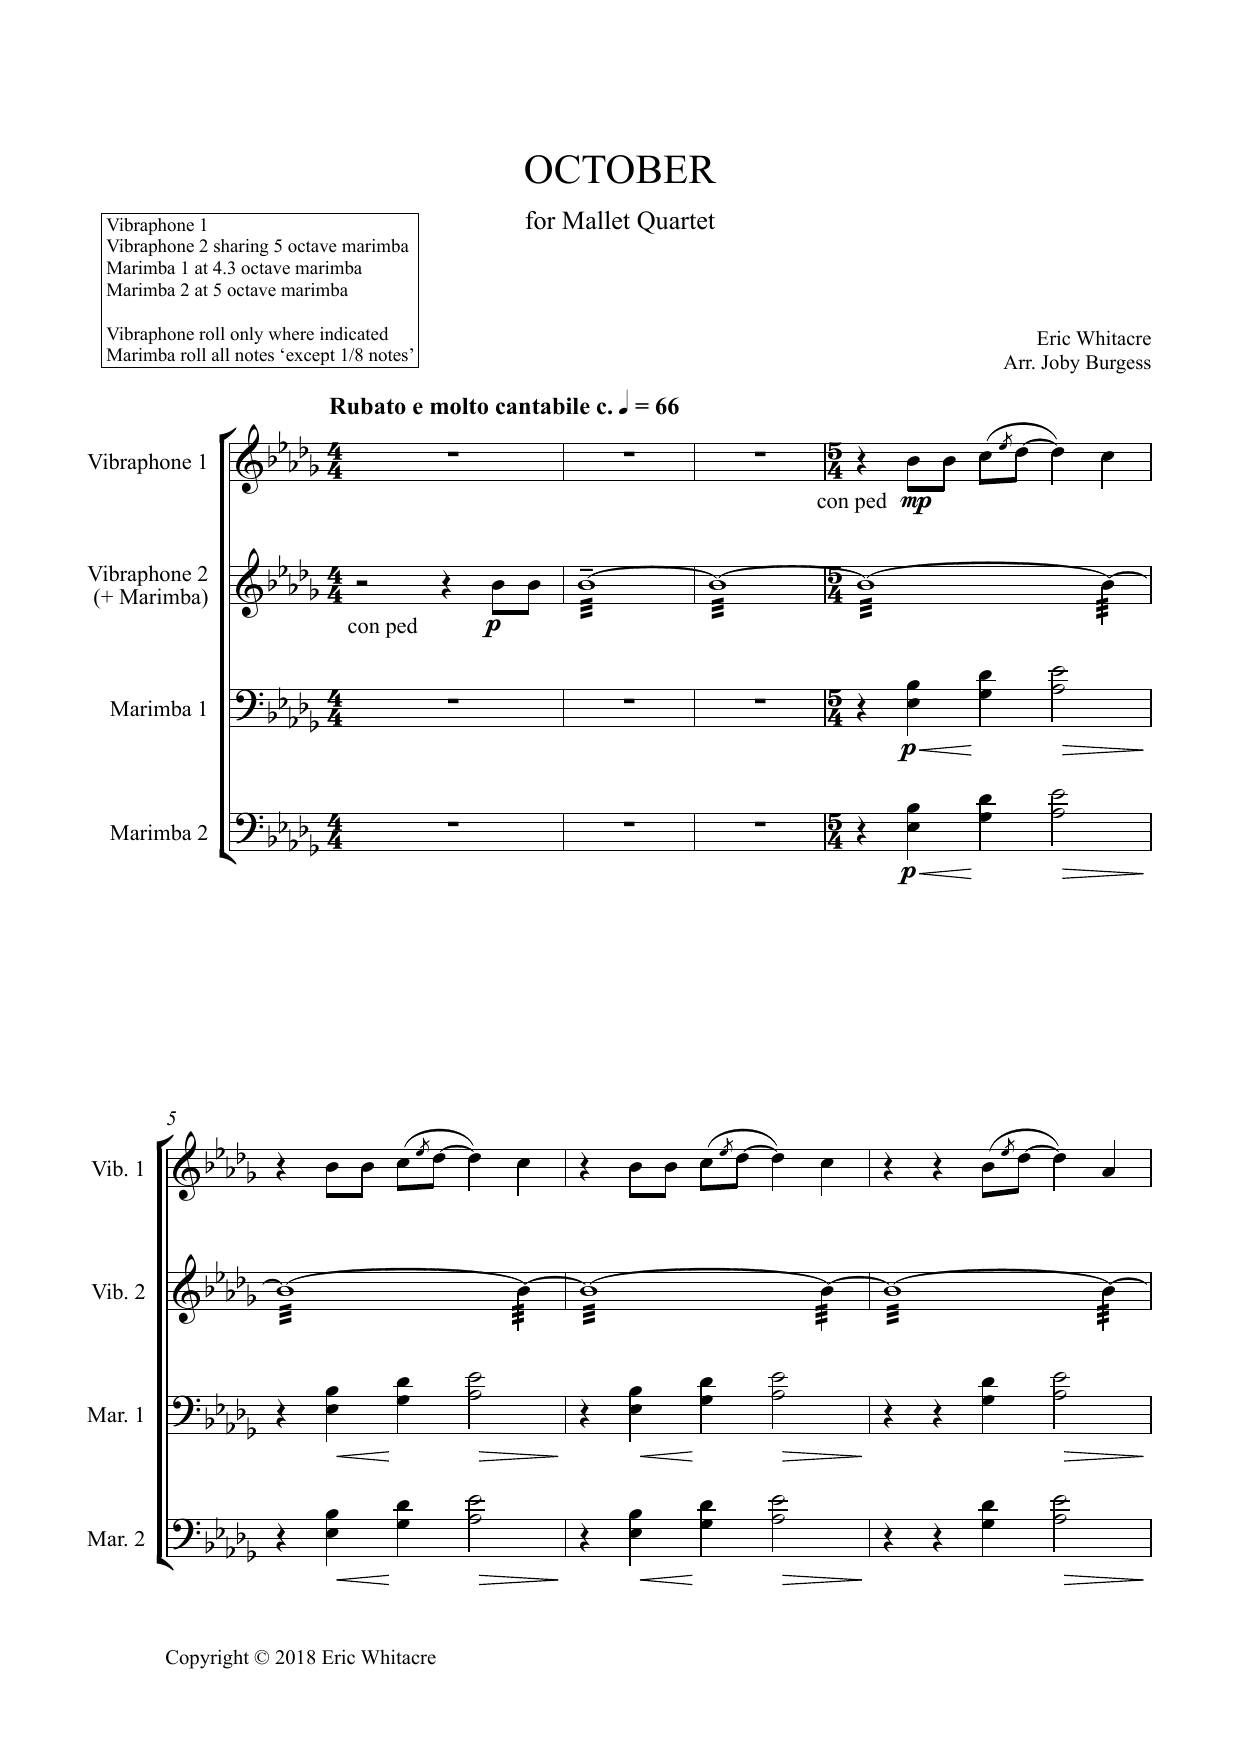 Download Eric Whitacre October (Alleluia) for Mallet Quartet ( Sheet Music